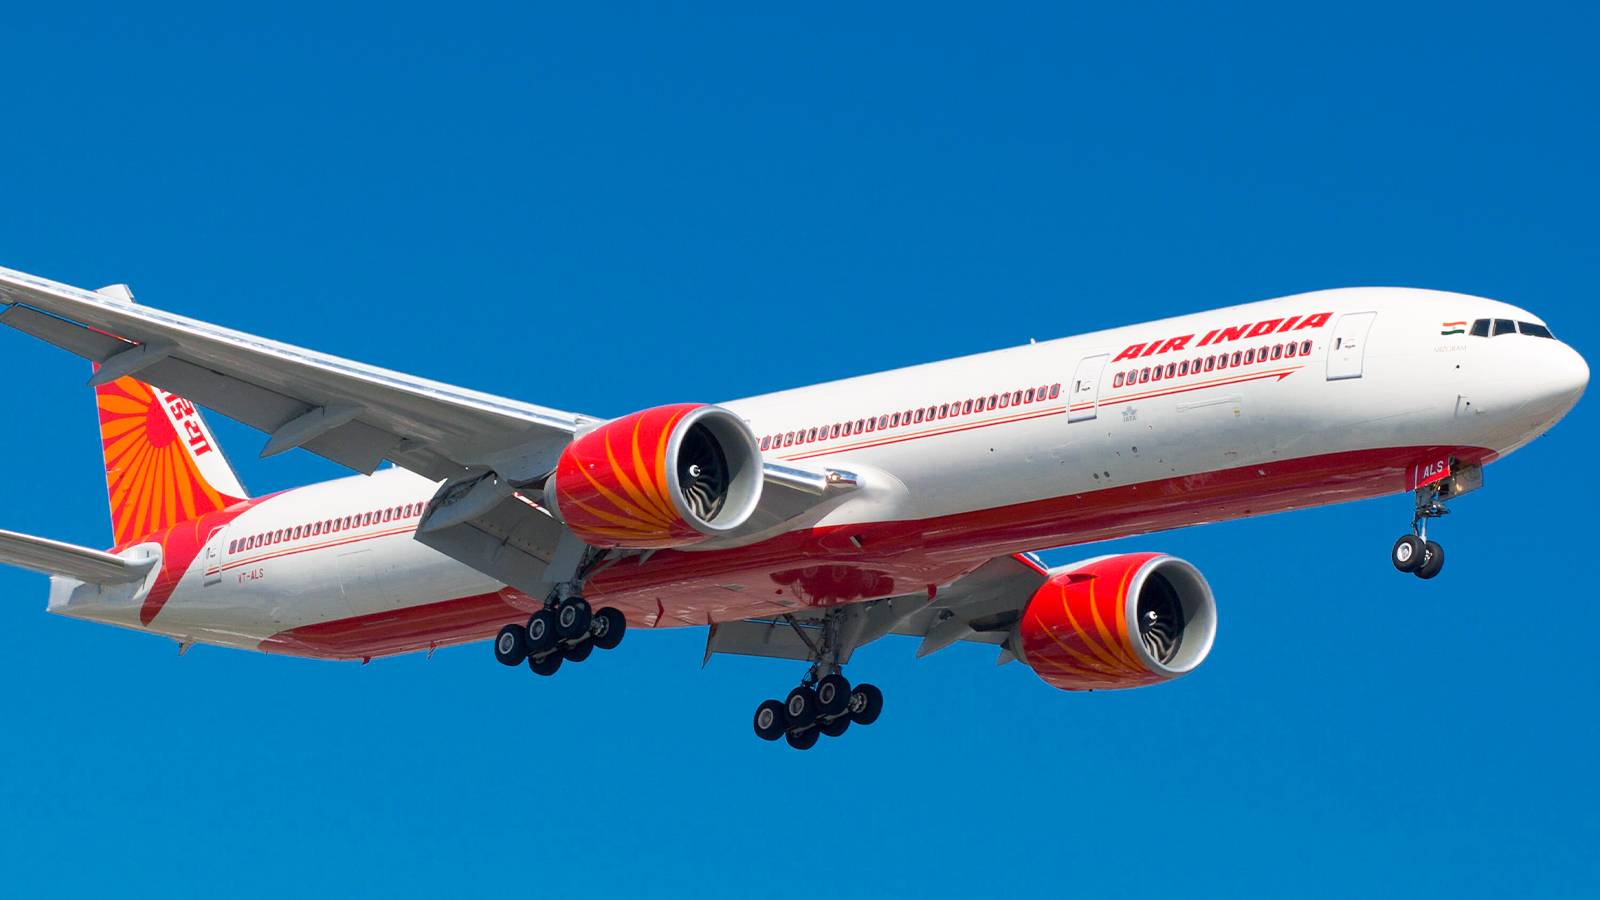 Индийские авиалинии: обзор самых крупных авиакомпаний индии, список менее известных компаний, отзывы пассажиров